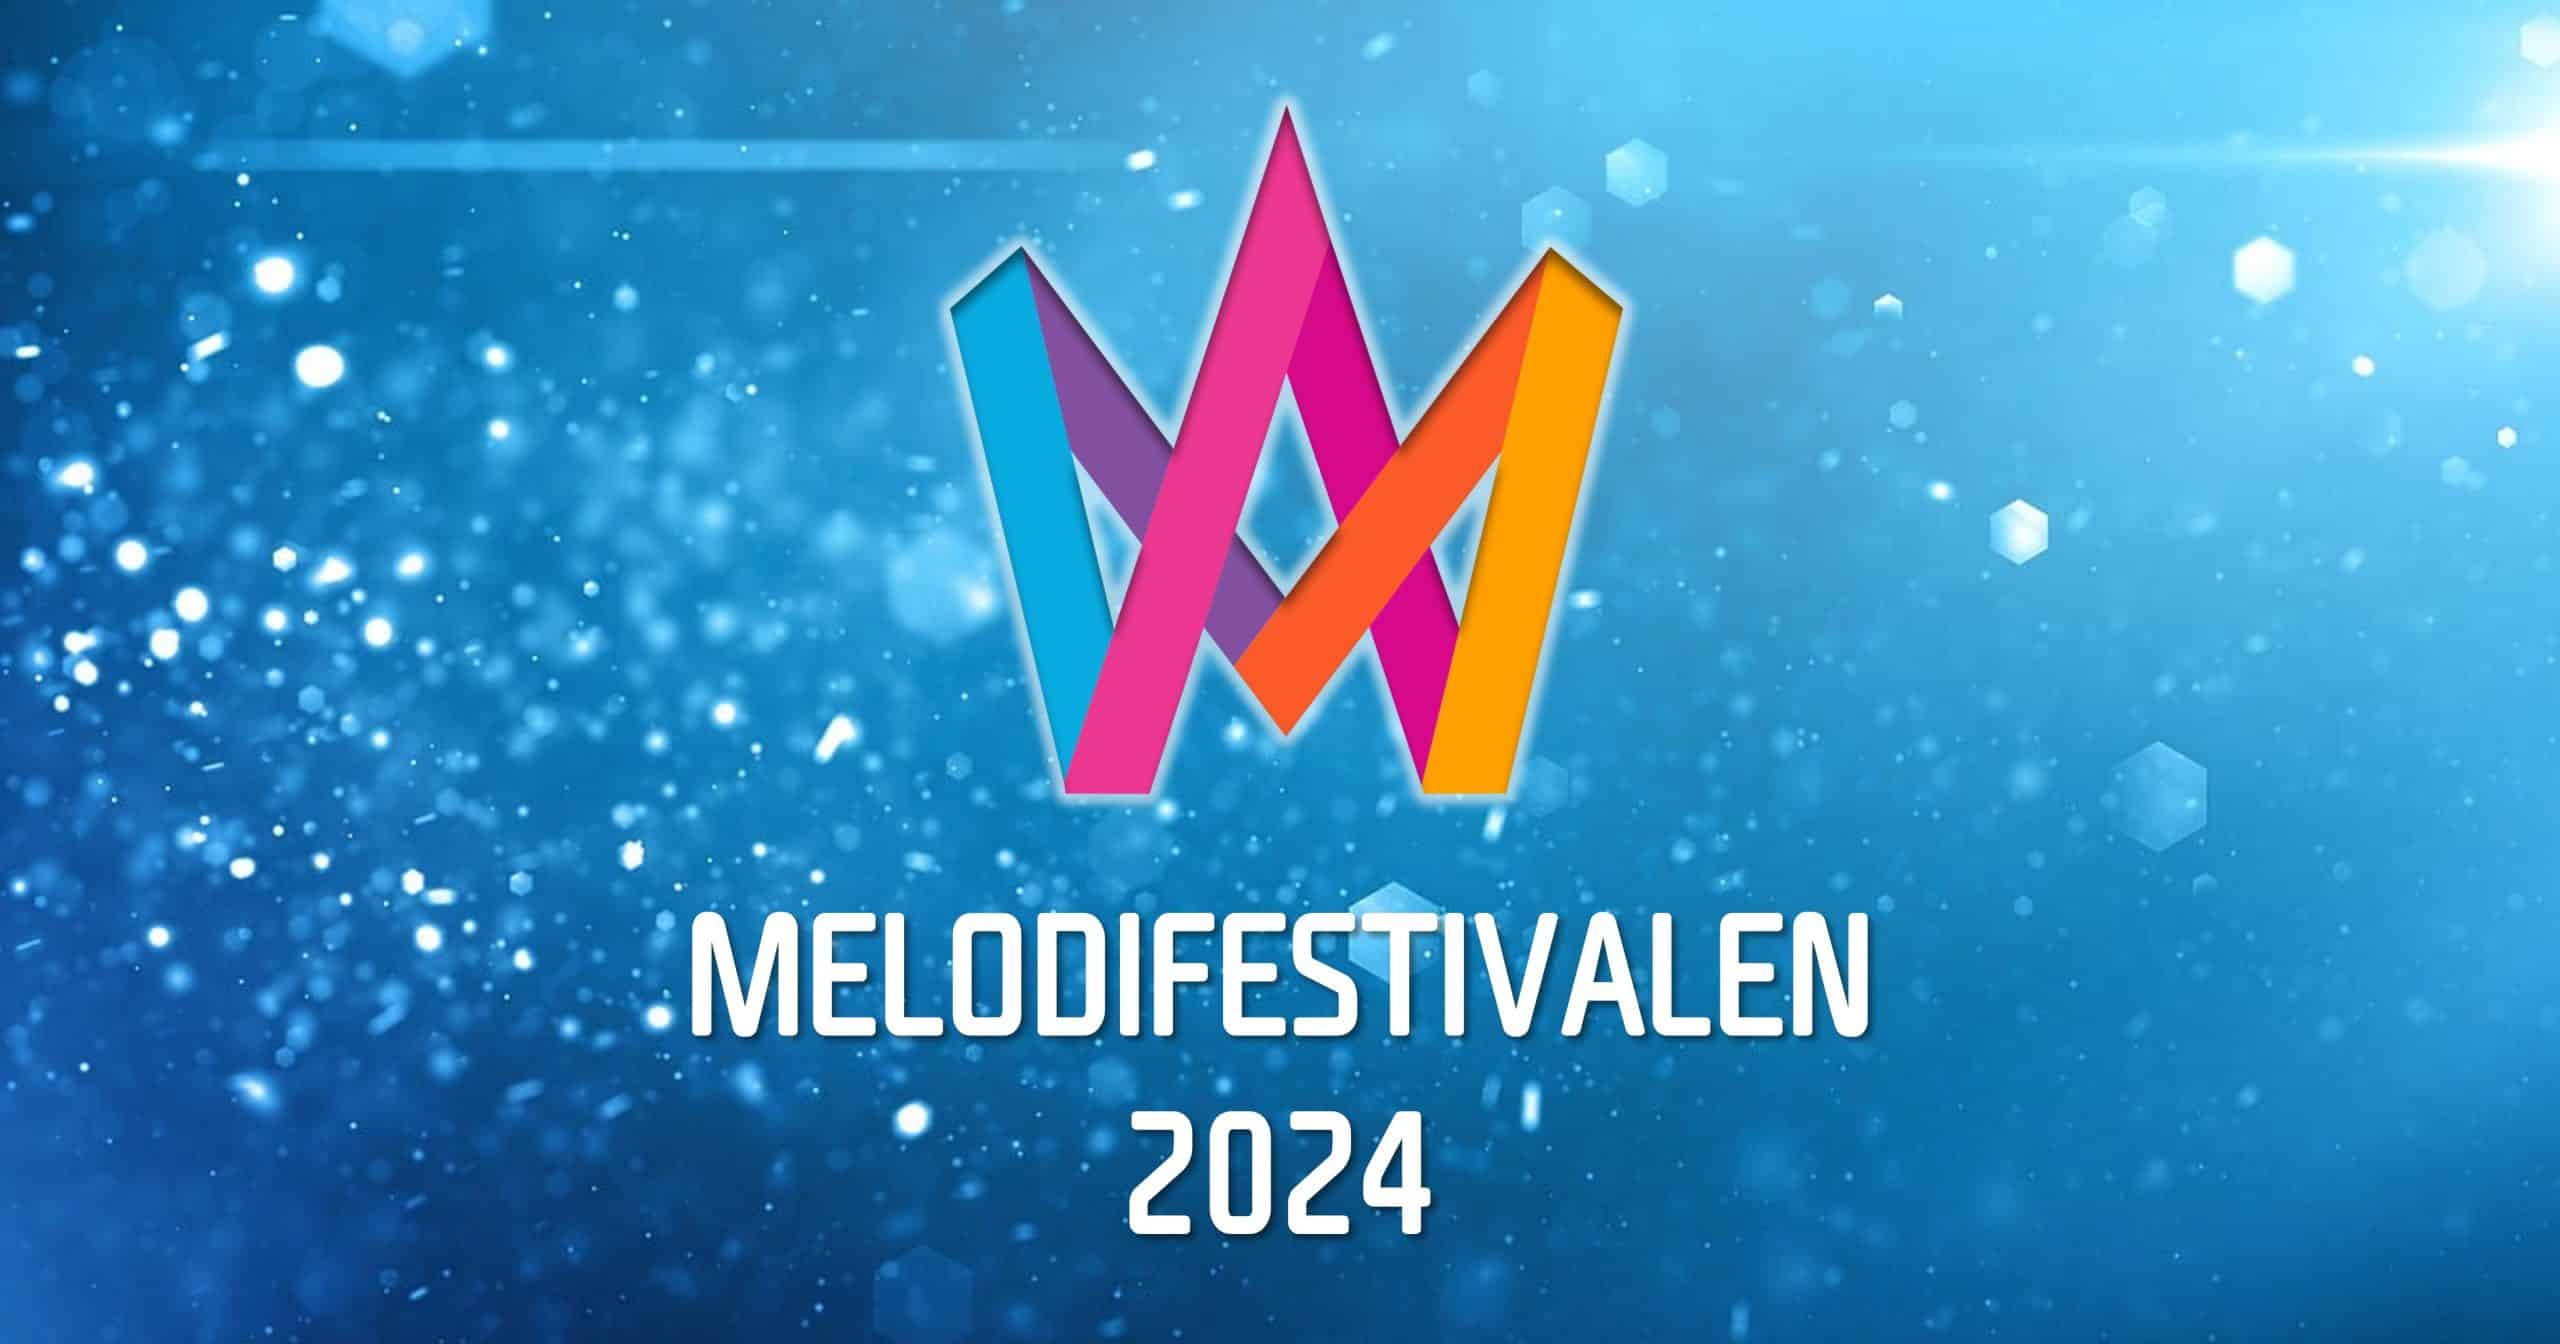 Σουηδία: Ανακοινώθηκε η λίστα των 30 υποψηφίων καλλιτεχνών του Melodifestivalen 2024